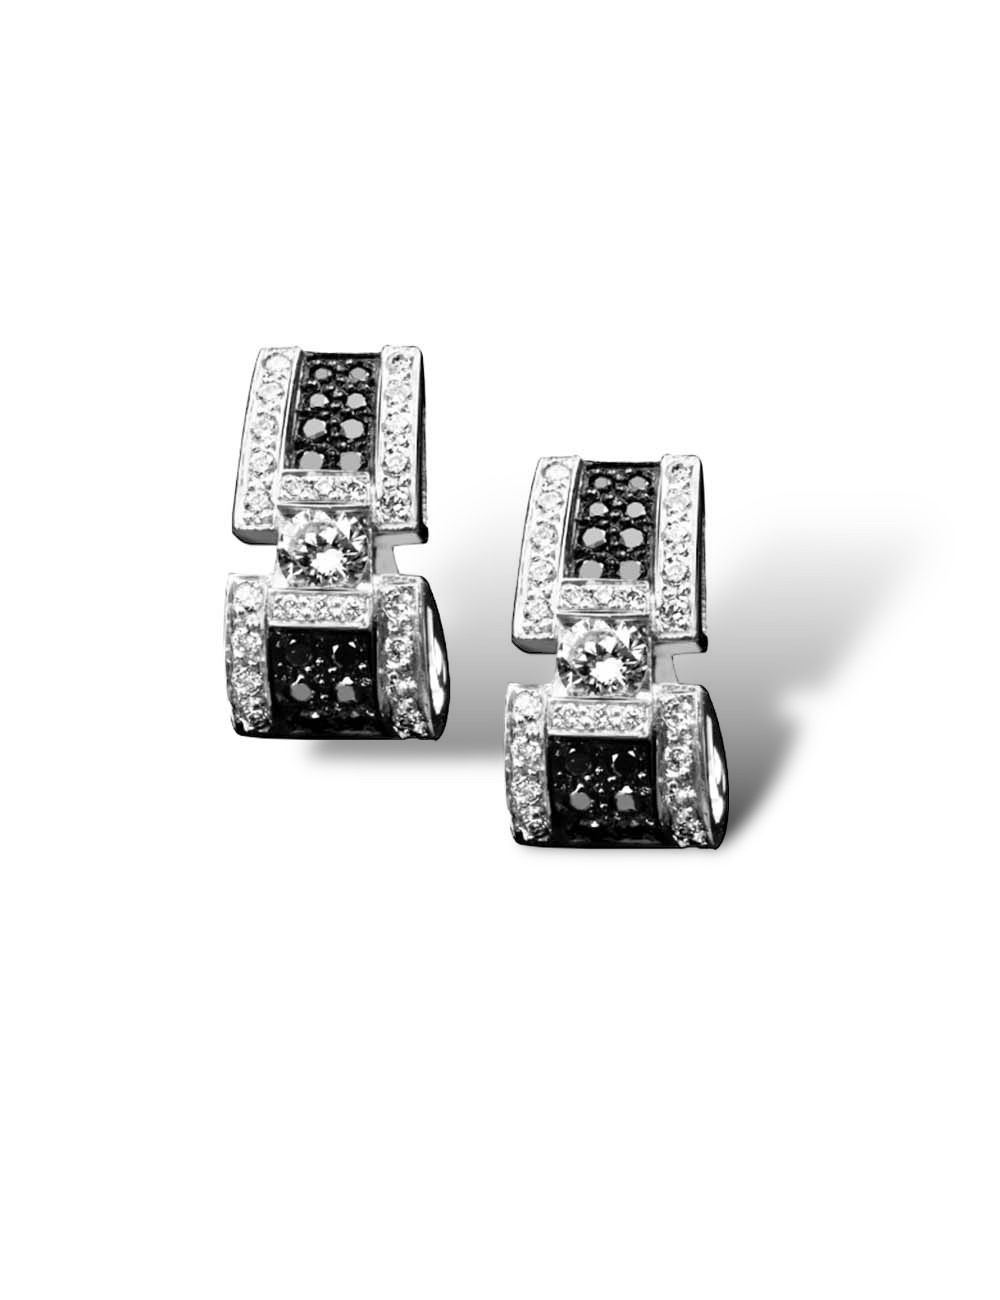 Boucles d'oreilles en or blanc avec diamants noirs et blancs pour un luxe intemporel.